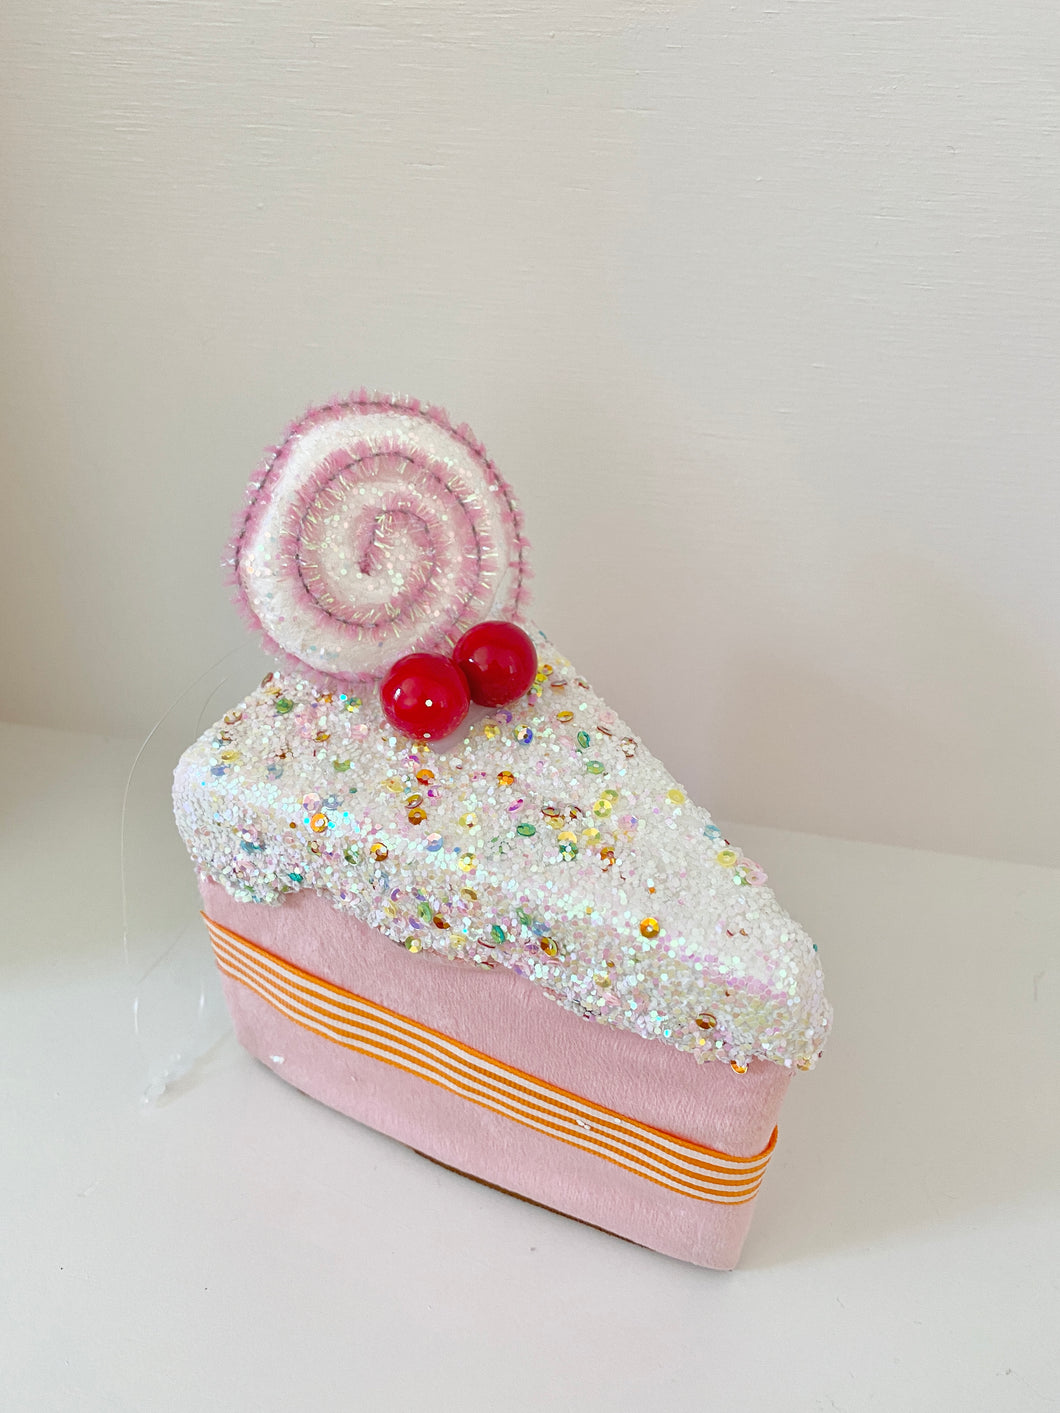 Sprinkles Cake Slice Ornament